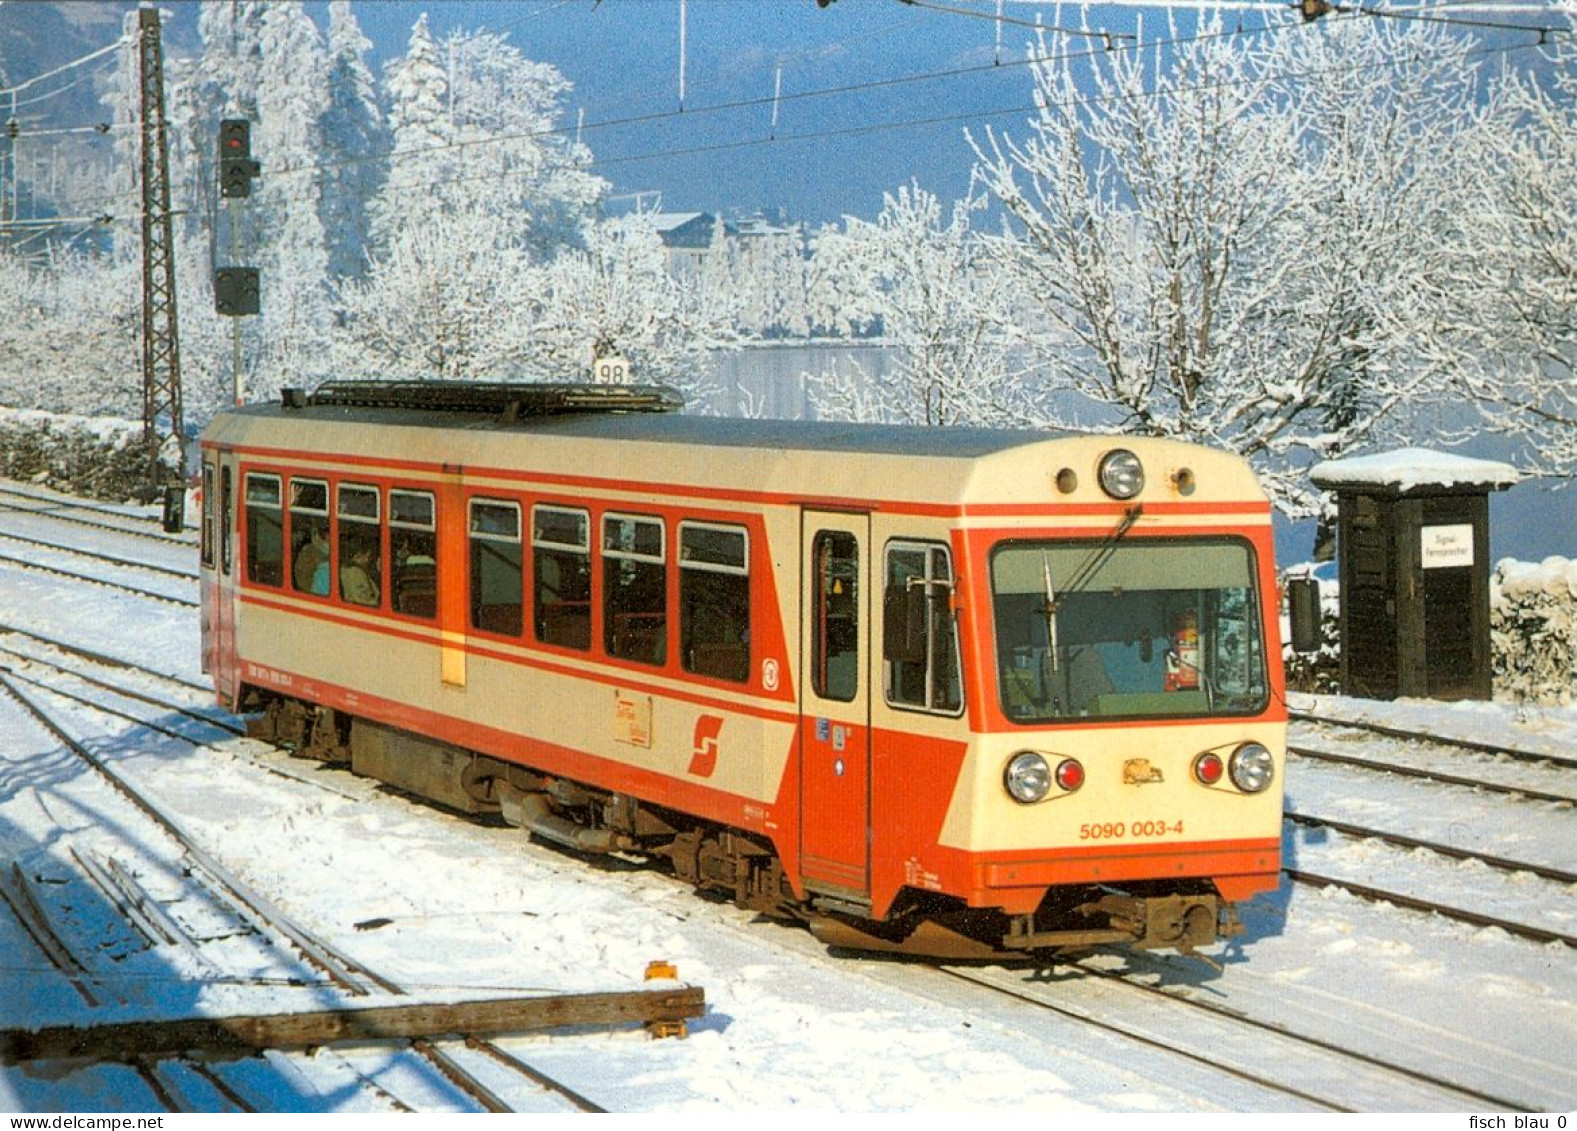 AK Eisenbahn ÖBB Dieseltriebwagen 5090 003-4 Zell Am See 1989 Pinzgau Salzburg Bahnladen Österreich Austria Autriche Zug - Trains